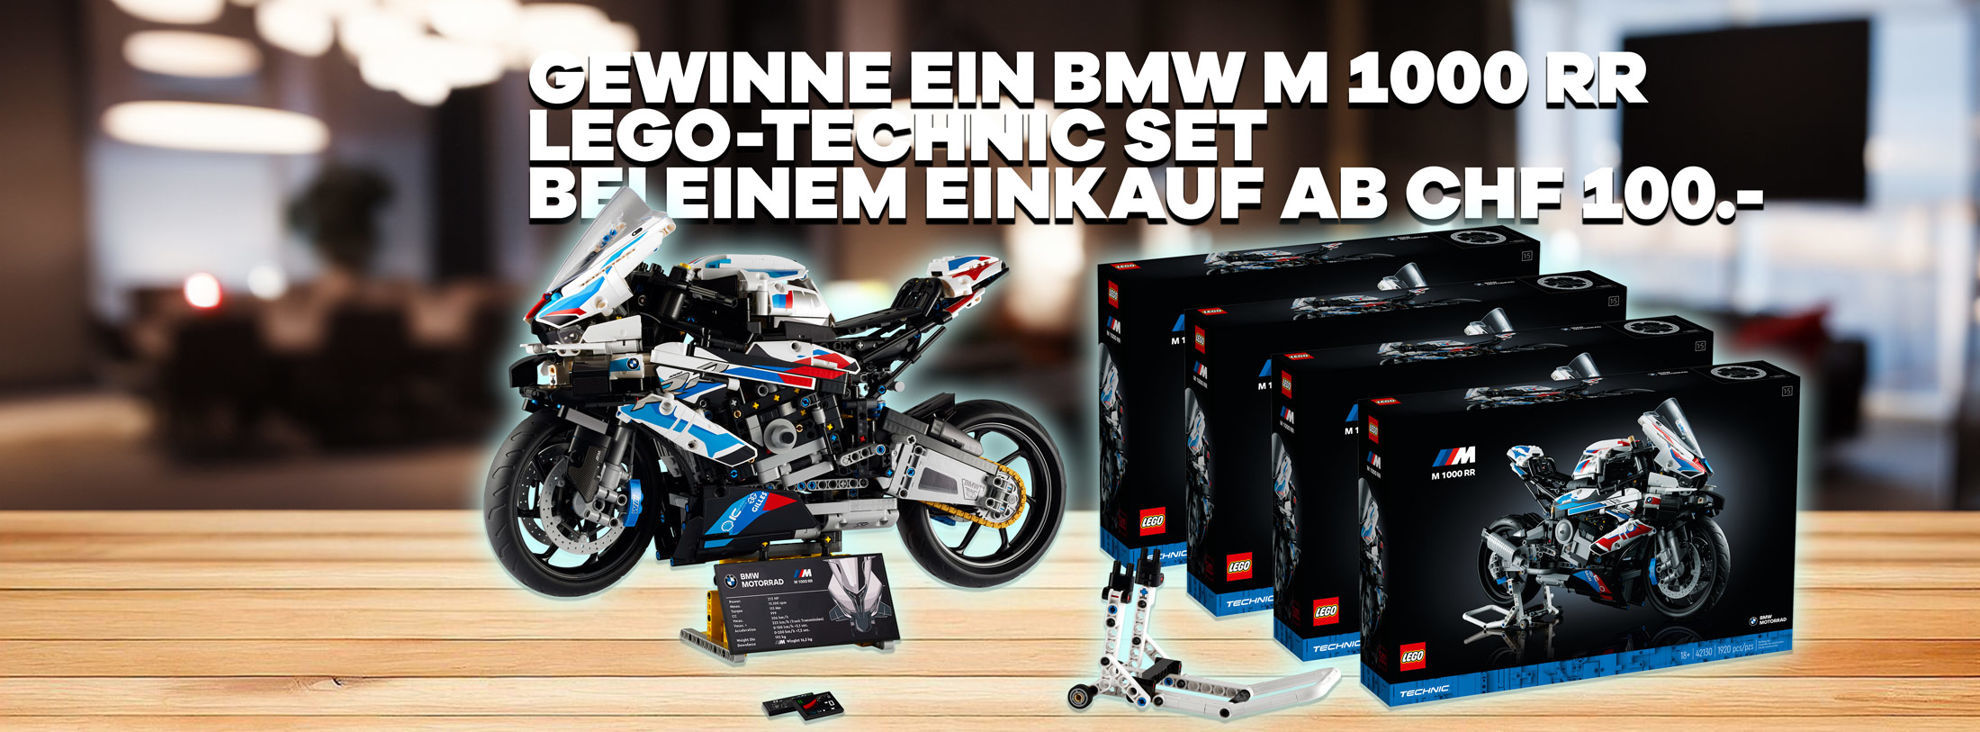 Gewinne ein BMW M 1000 RR Lego Tchnic Set